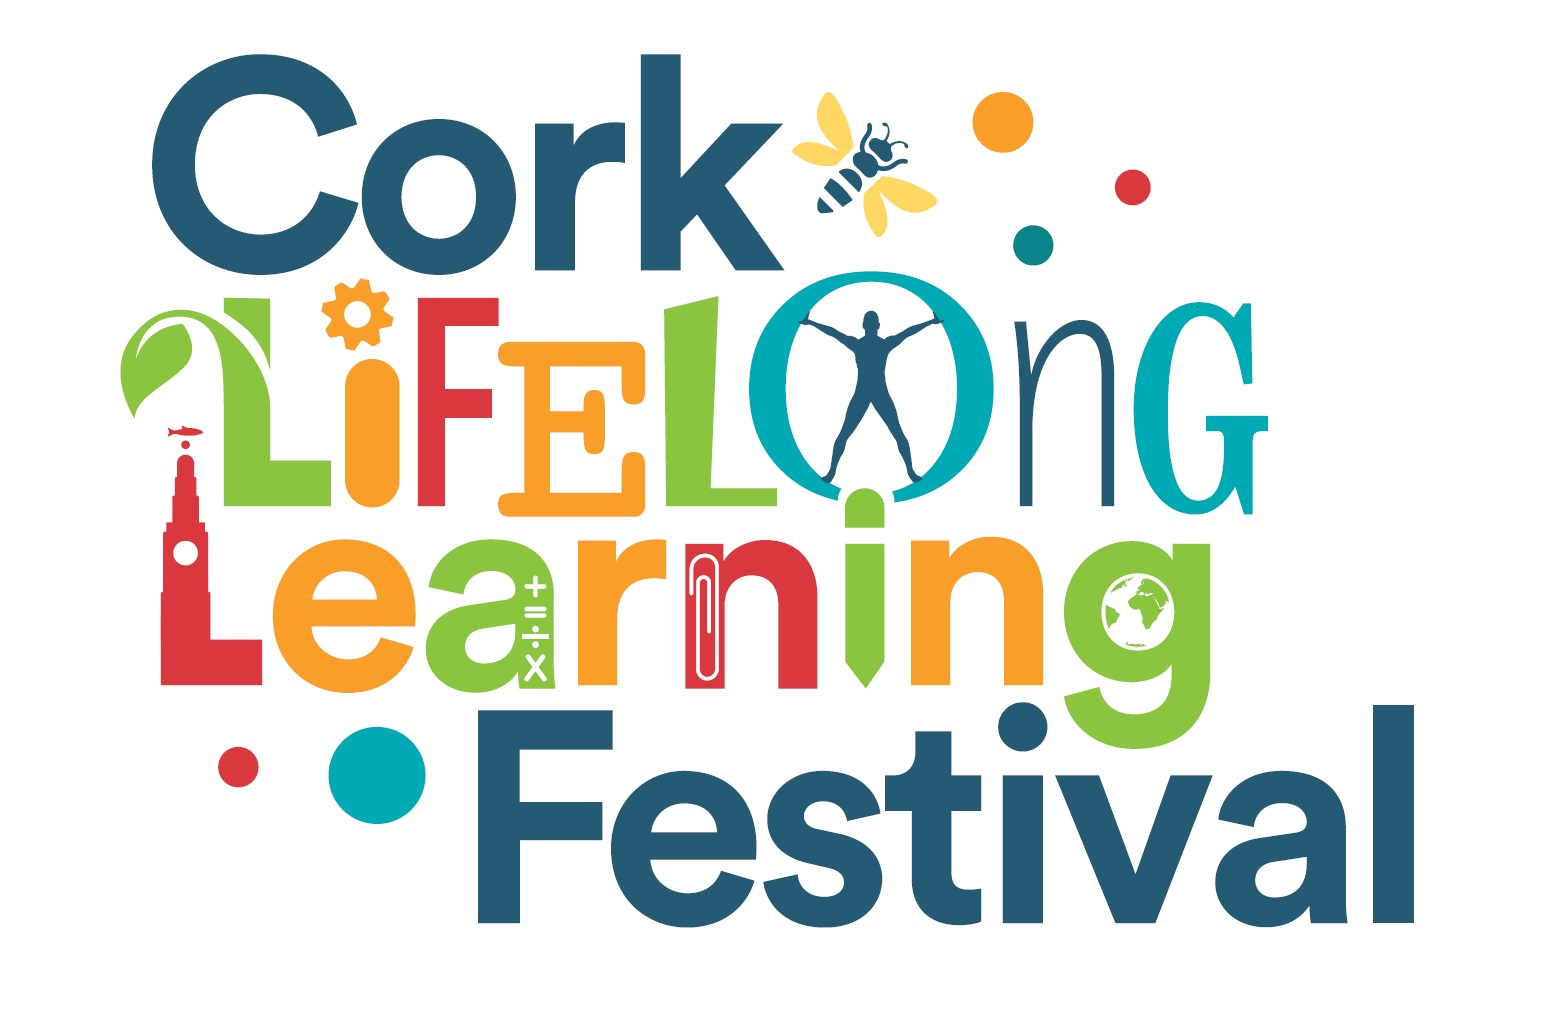 Cork Lifelong Learning Festival 